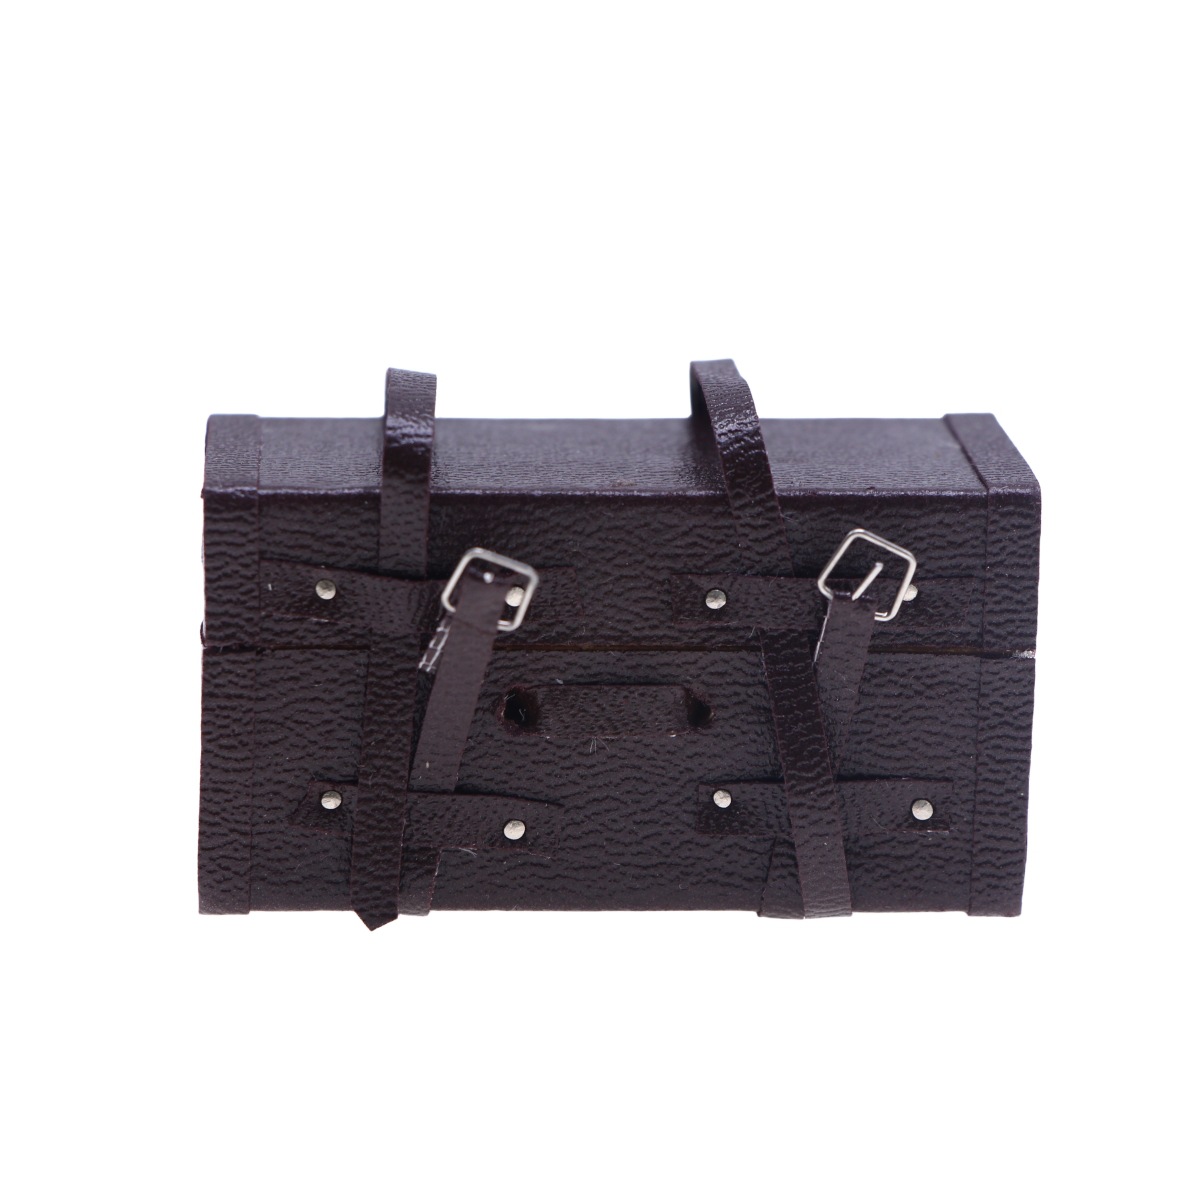 ins  模型  撮影道具  ミニチュア  モデル  インテリア置物   デコレーション  木製  スーツケース